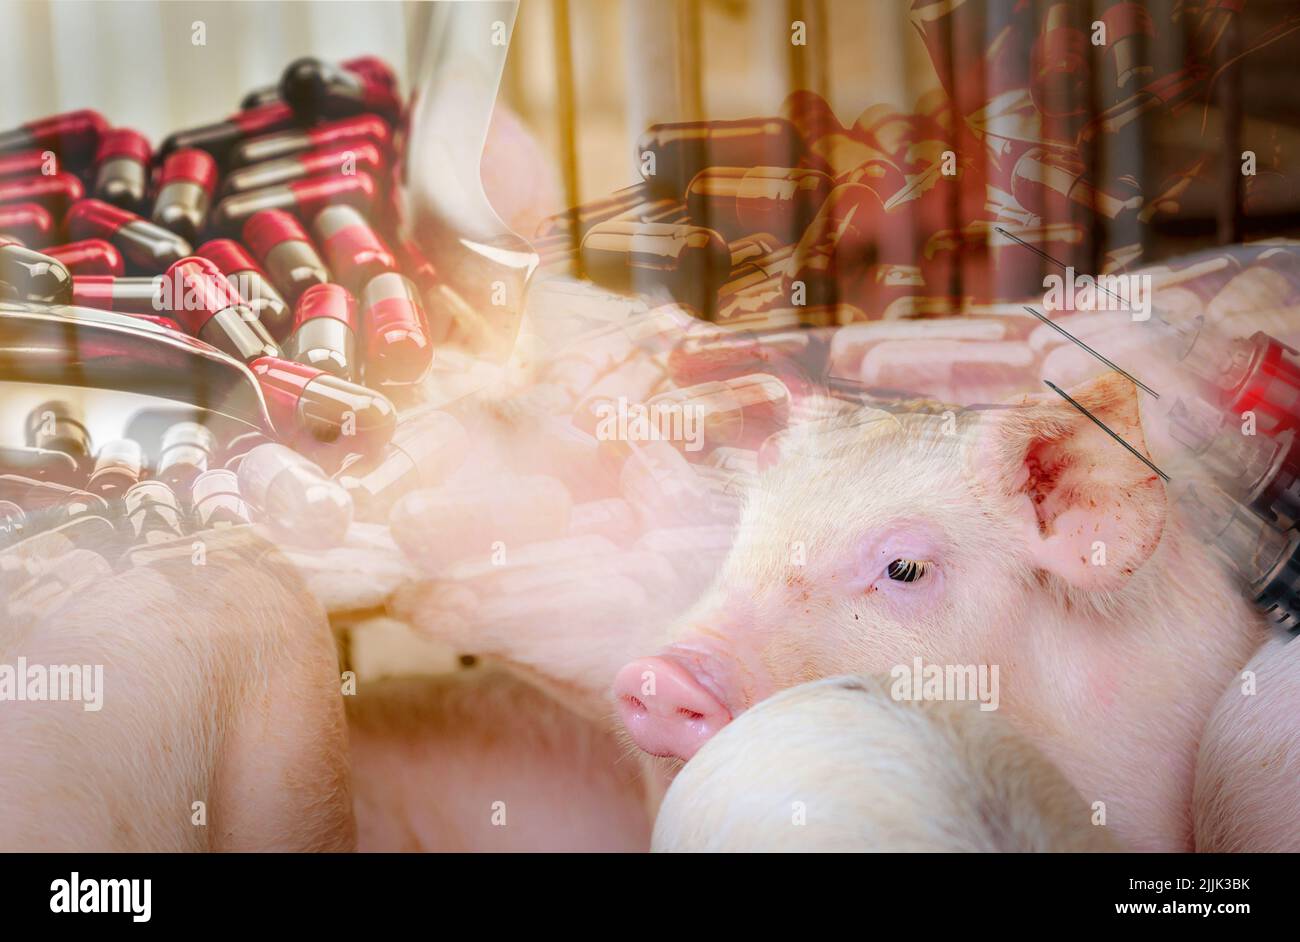 Cerdo en granja y cápsulas antibióticas y aguja y jeringa de vacuna para animales. Ganadería. Industria de la carne de cerdo. Cerdo sano y lindo. Foto de stock